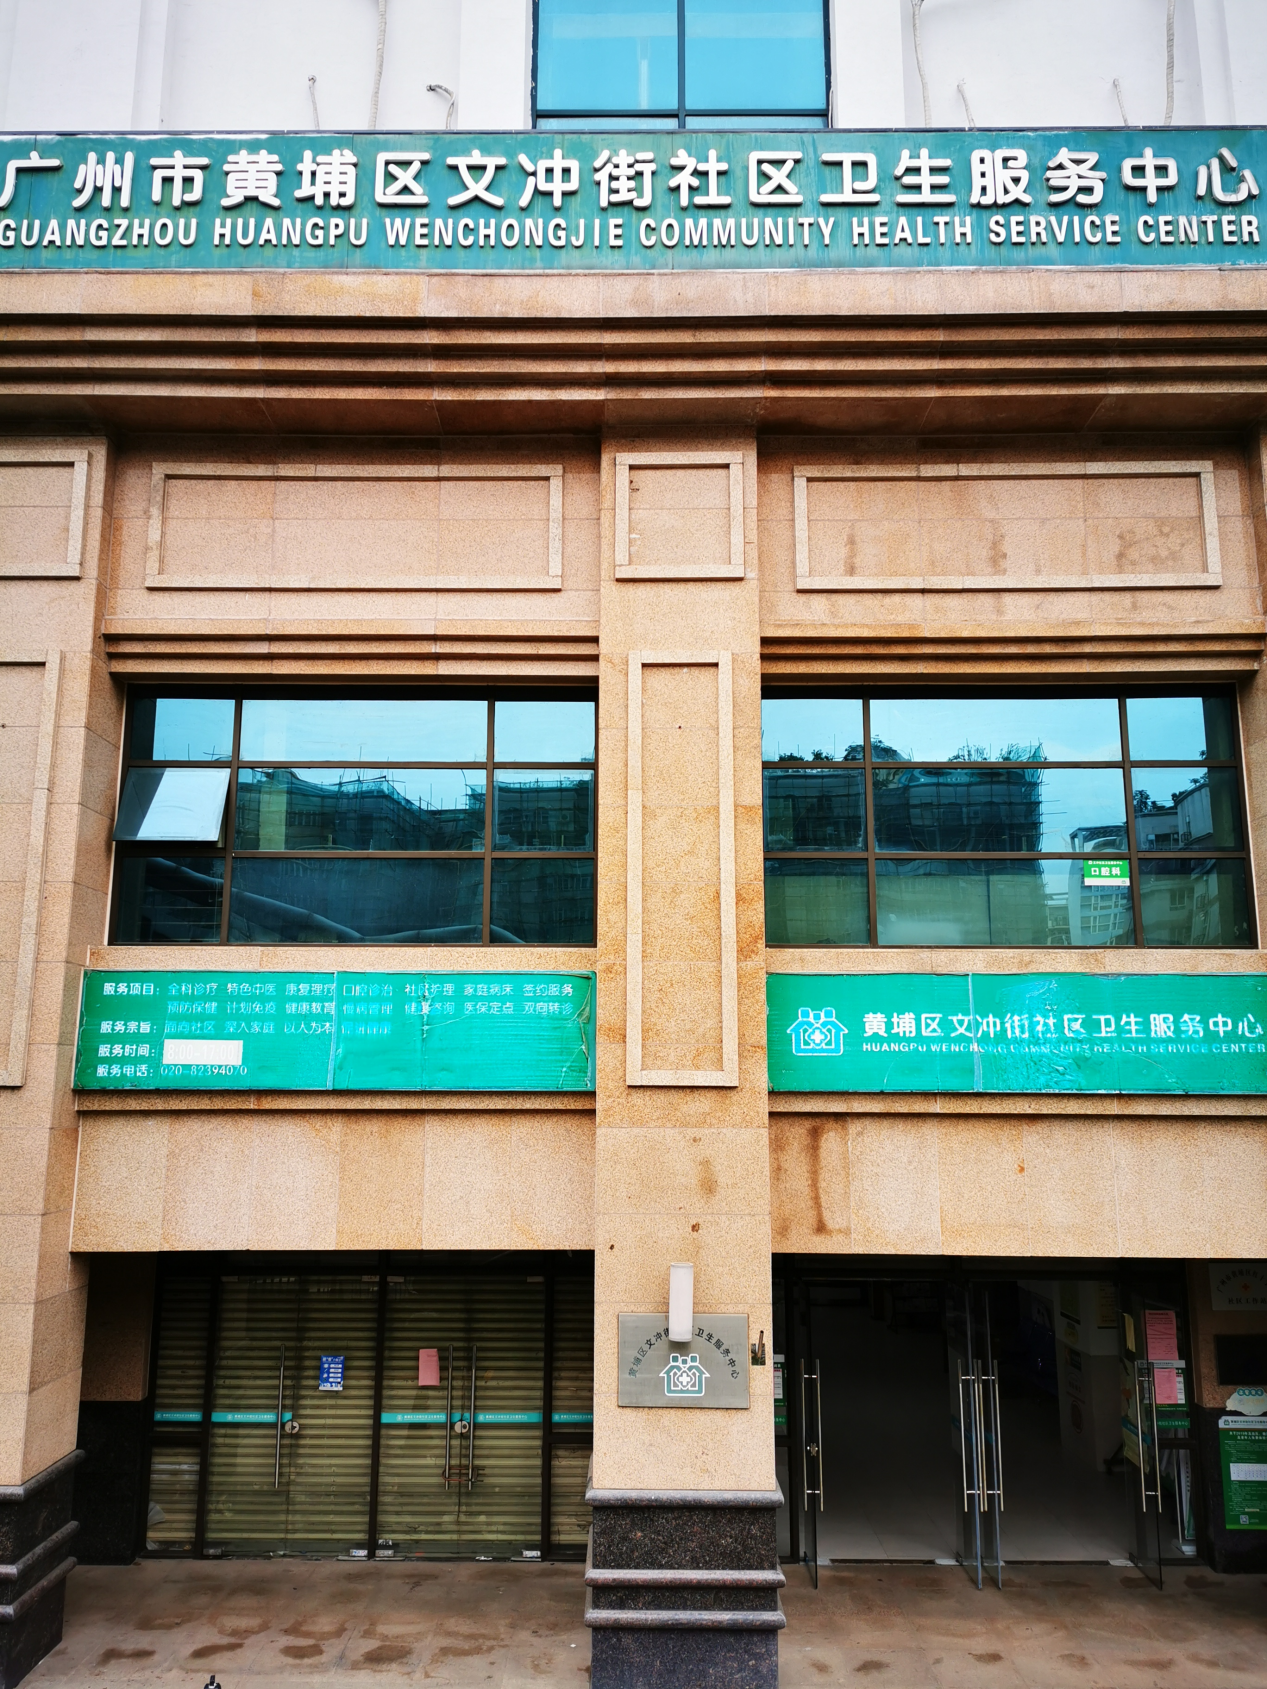 文冲街社区卫生服务中心.png